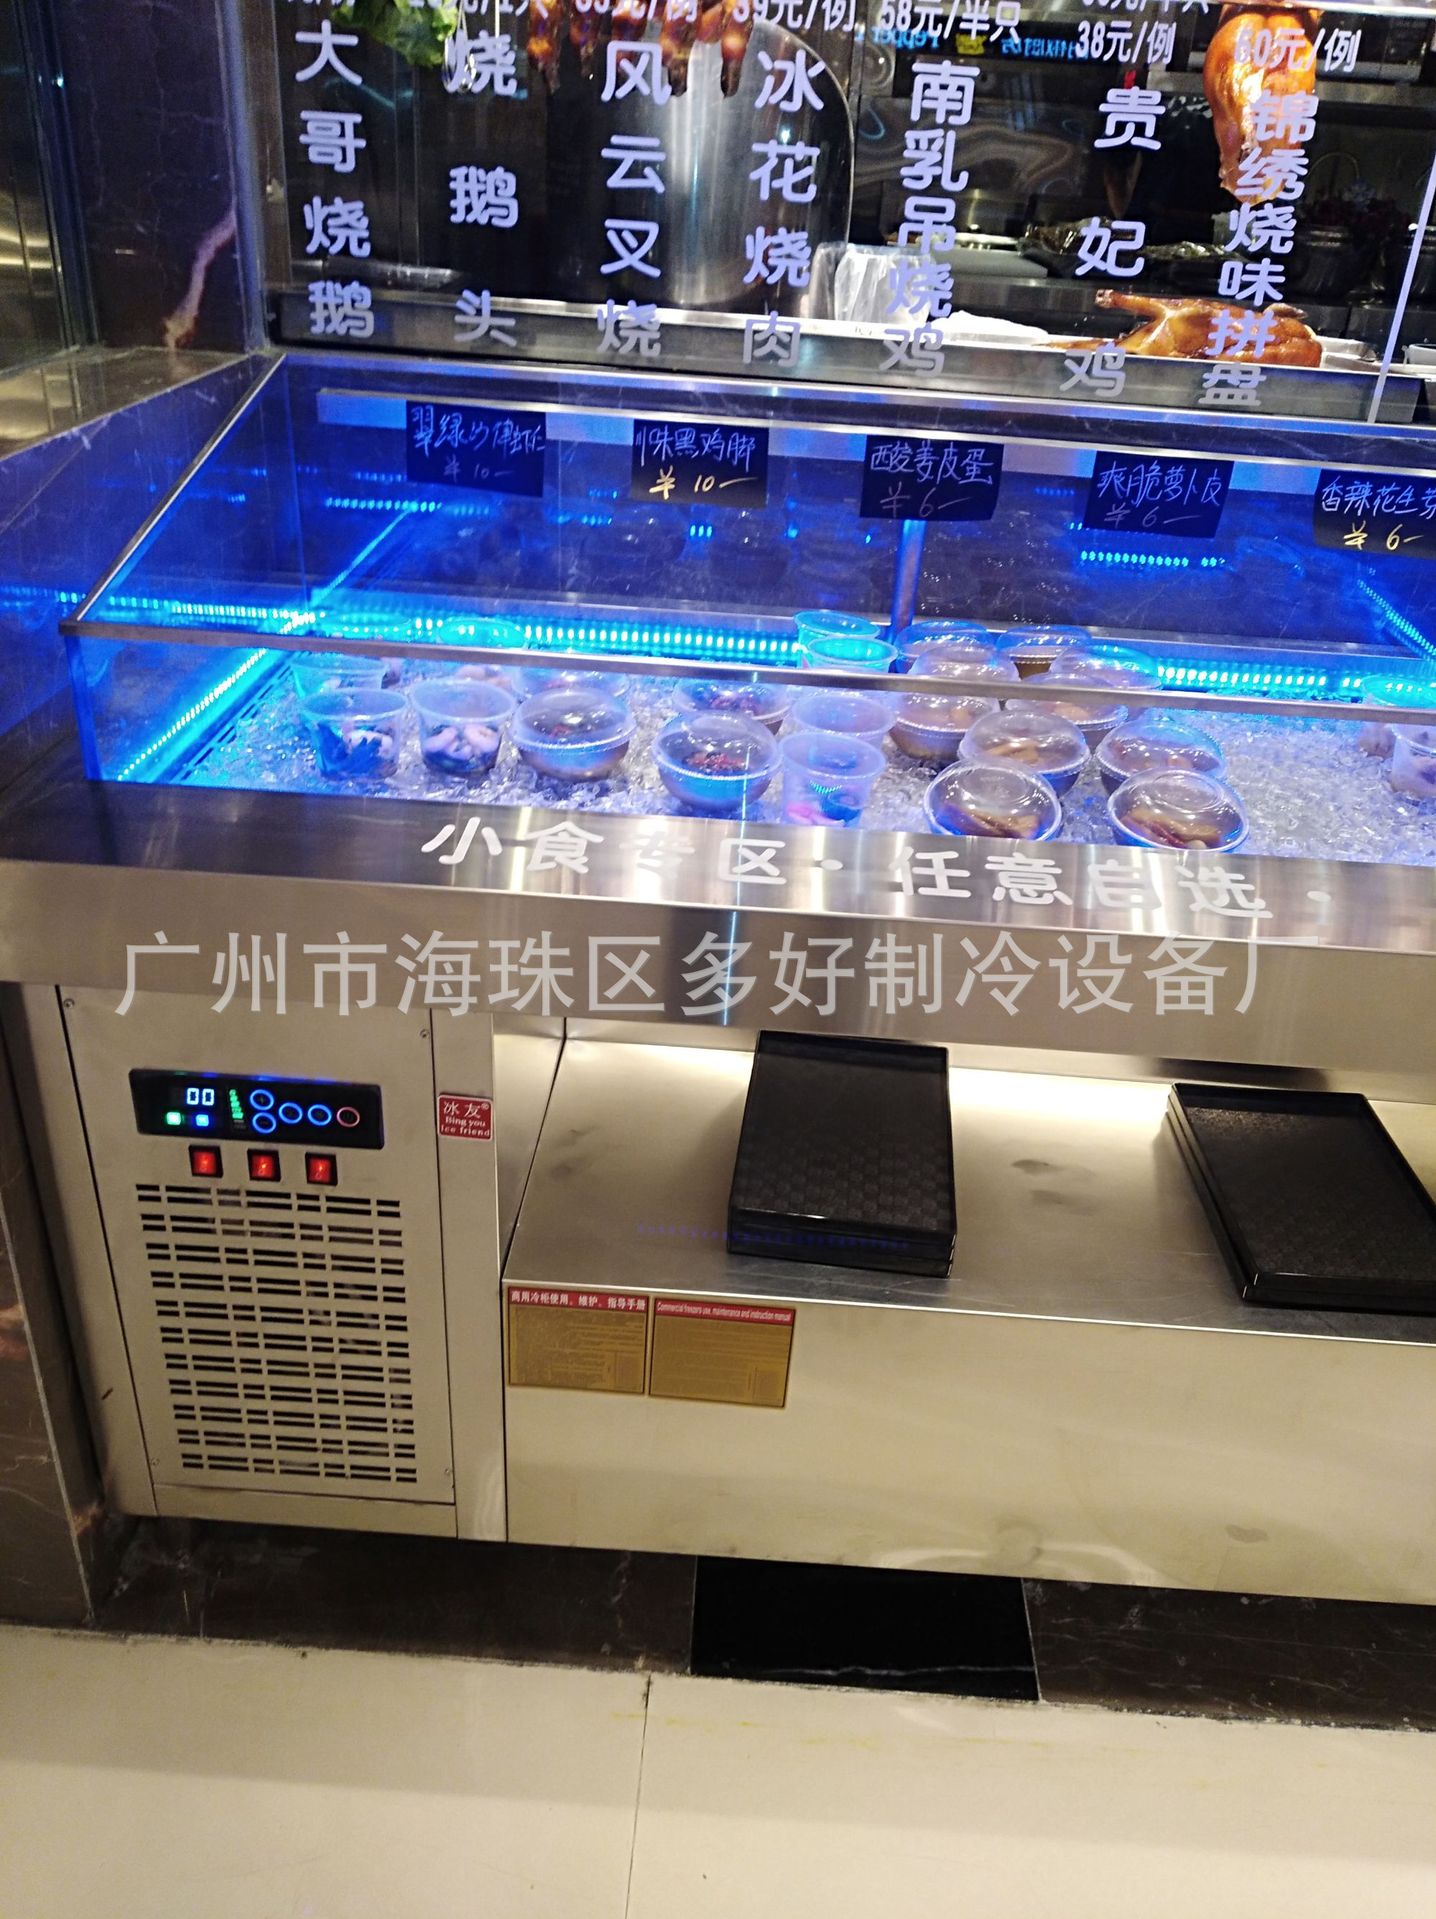 厂家直供保鲜柜 制冷冰鲜台 海鲜柜水果沙拉柜 全国联保示例图13